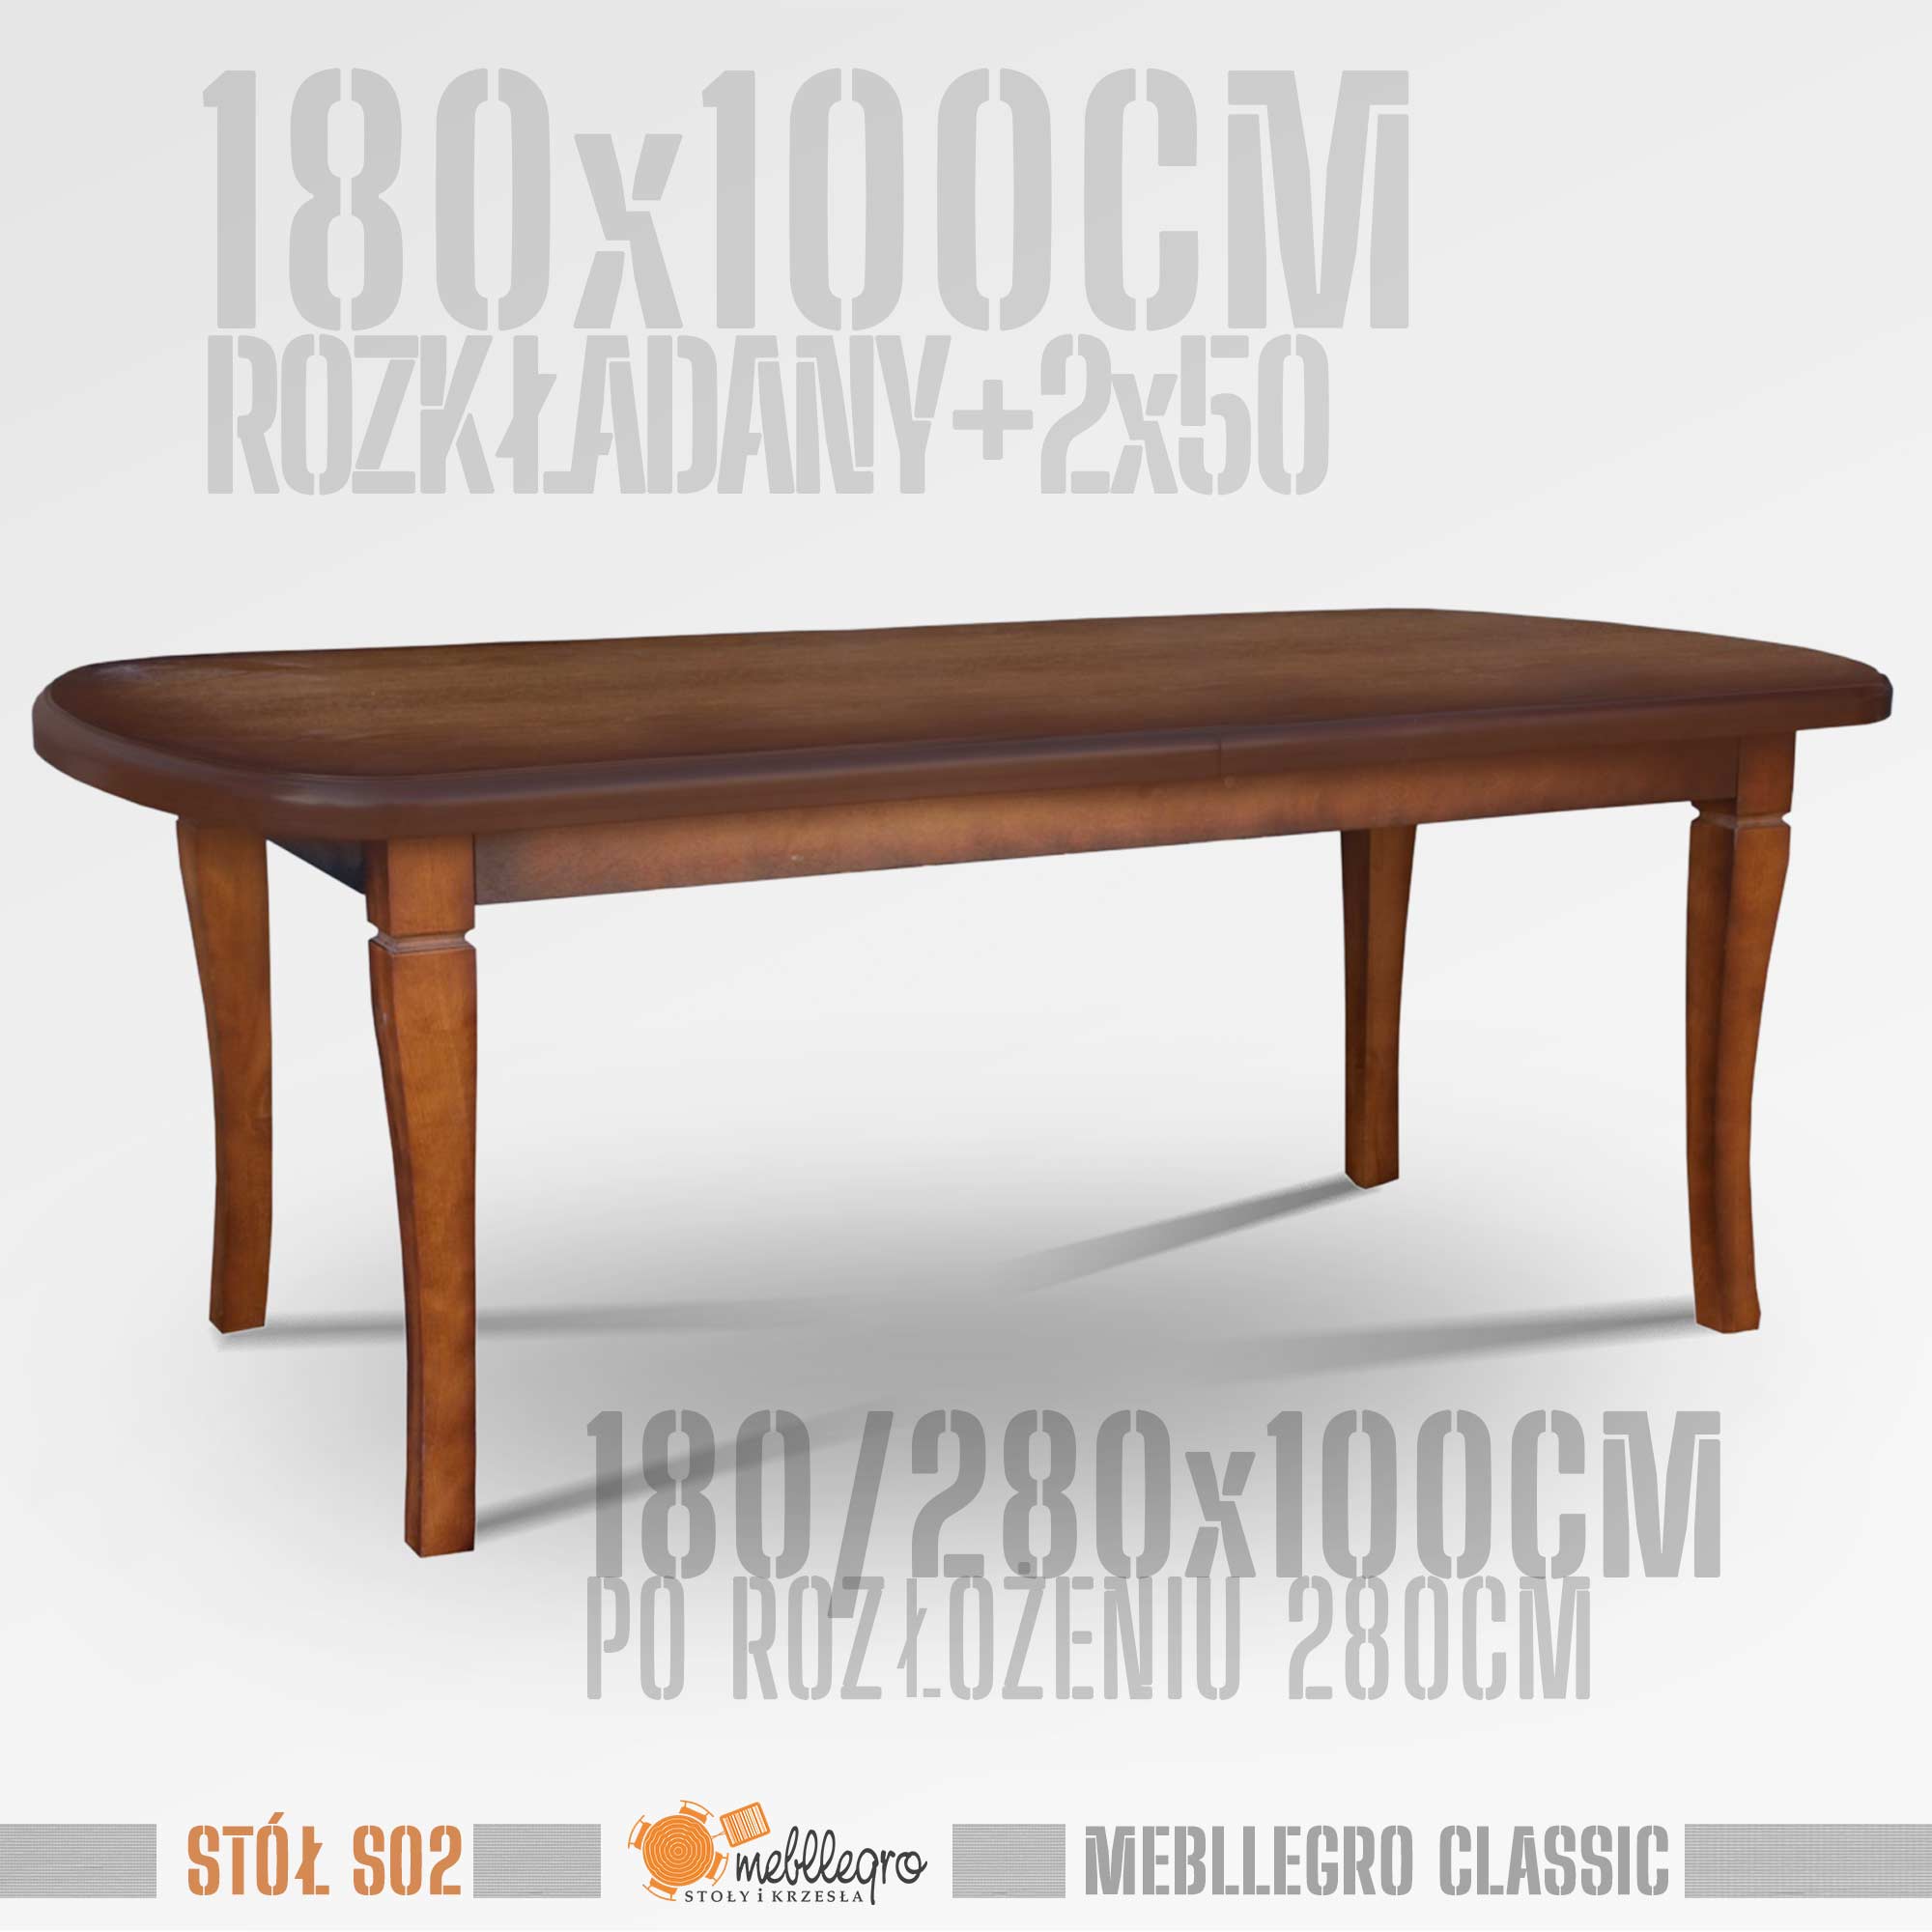 Stół drewniany S02 wymiary 180x100 po rozłożeniu 280x100 / MEBLLEGRO CLASSIC